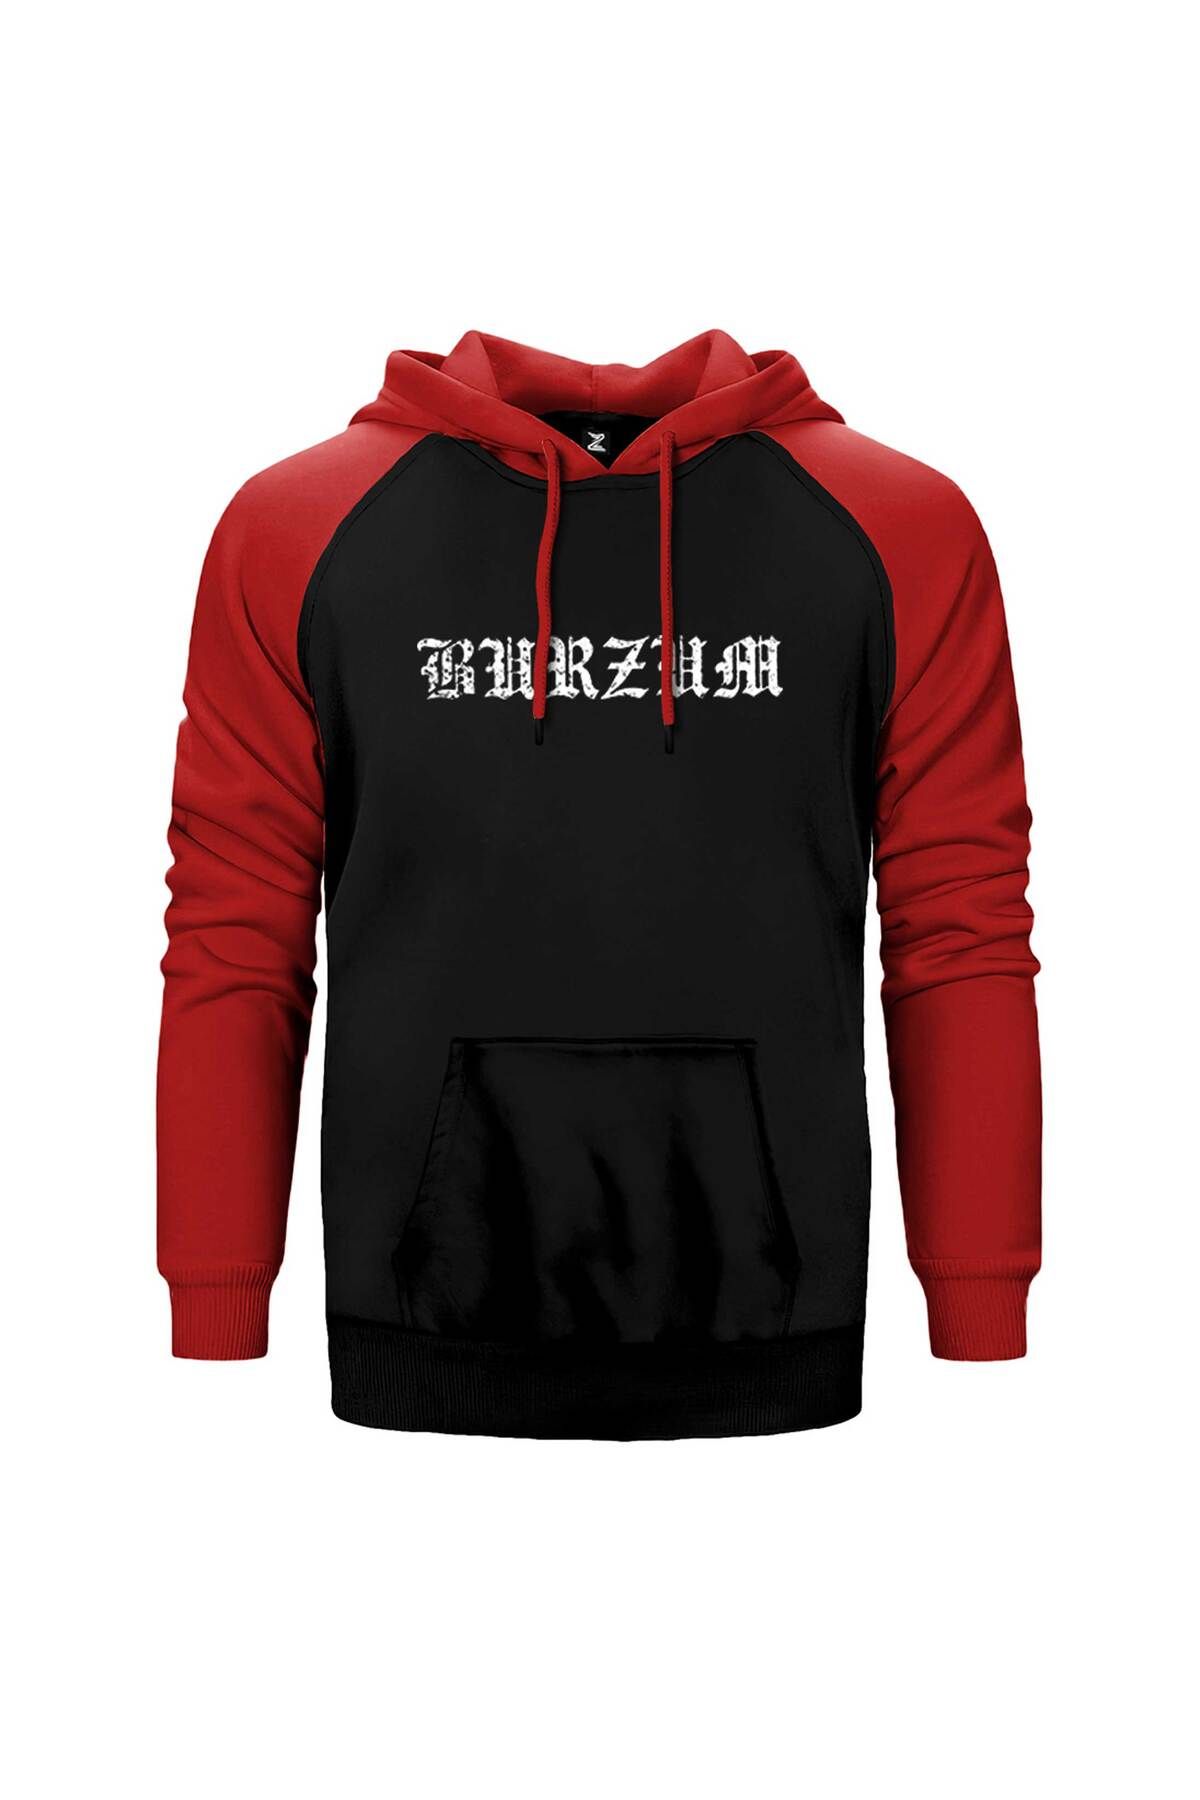 Z zepplin Burzum Logo Yazı Kırmızı Renk Reglan Kol Kapşonlu Sweatshirt